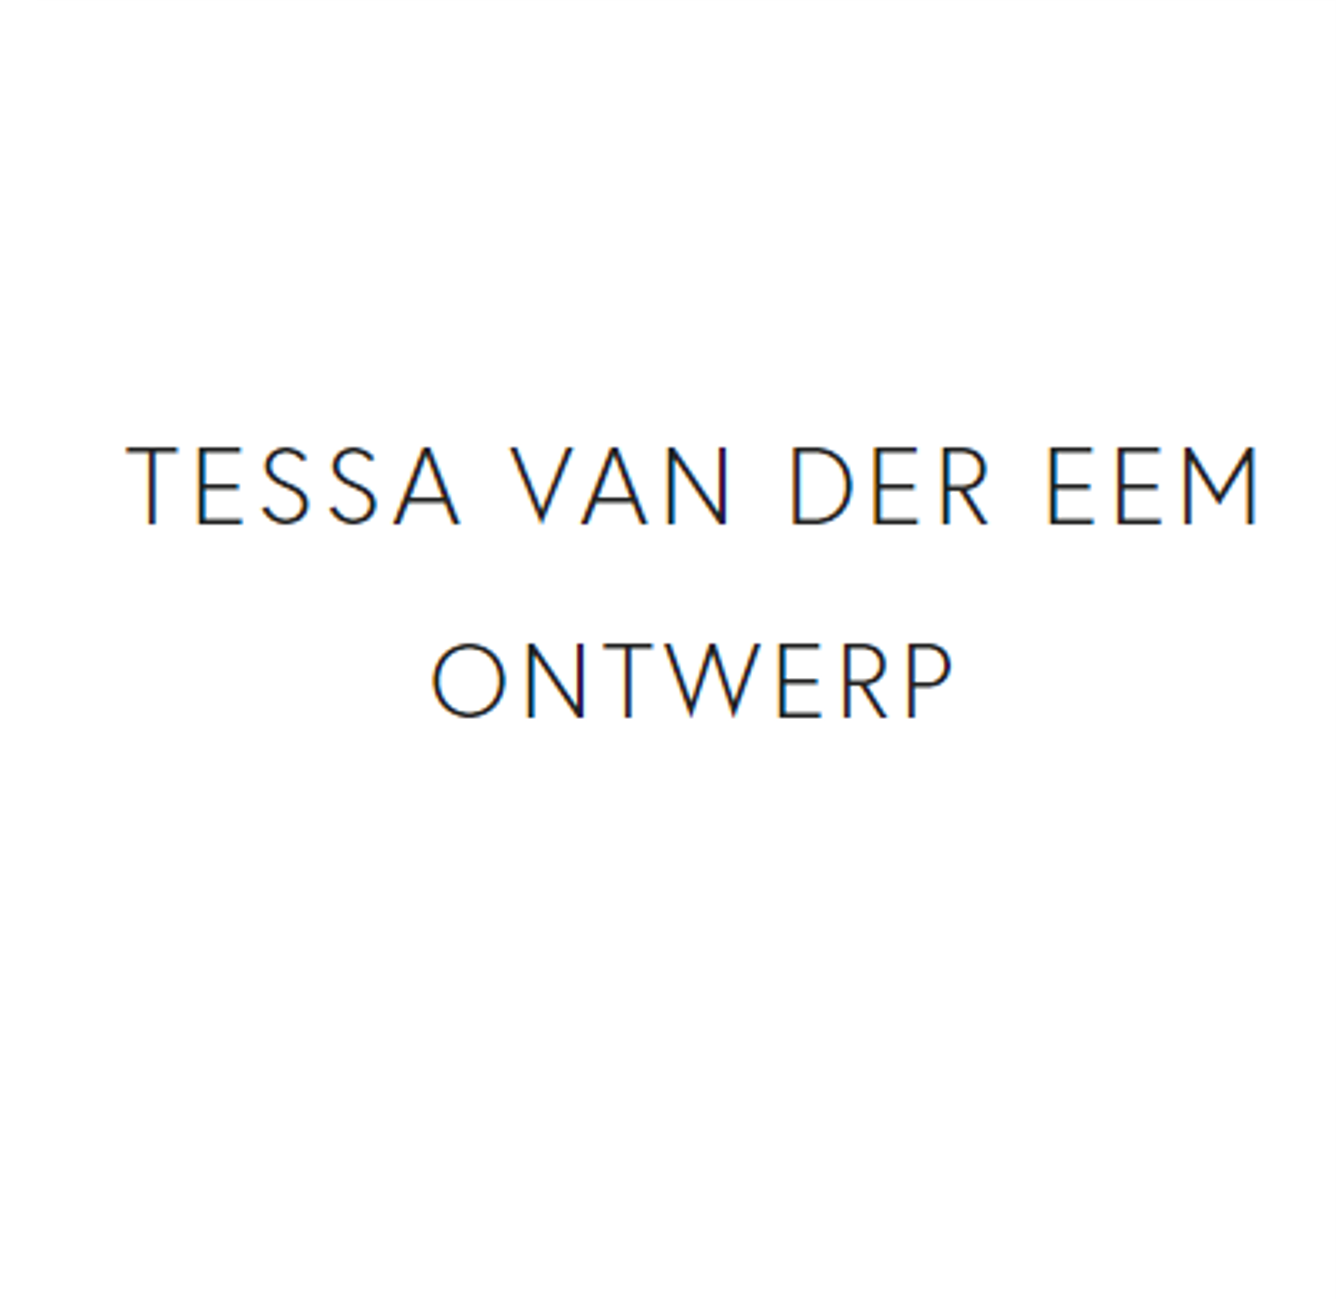 Tessa van der Eem Ontwerp is Capabel